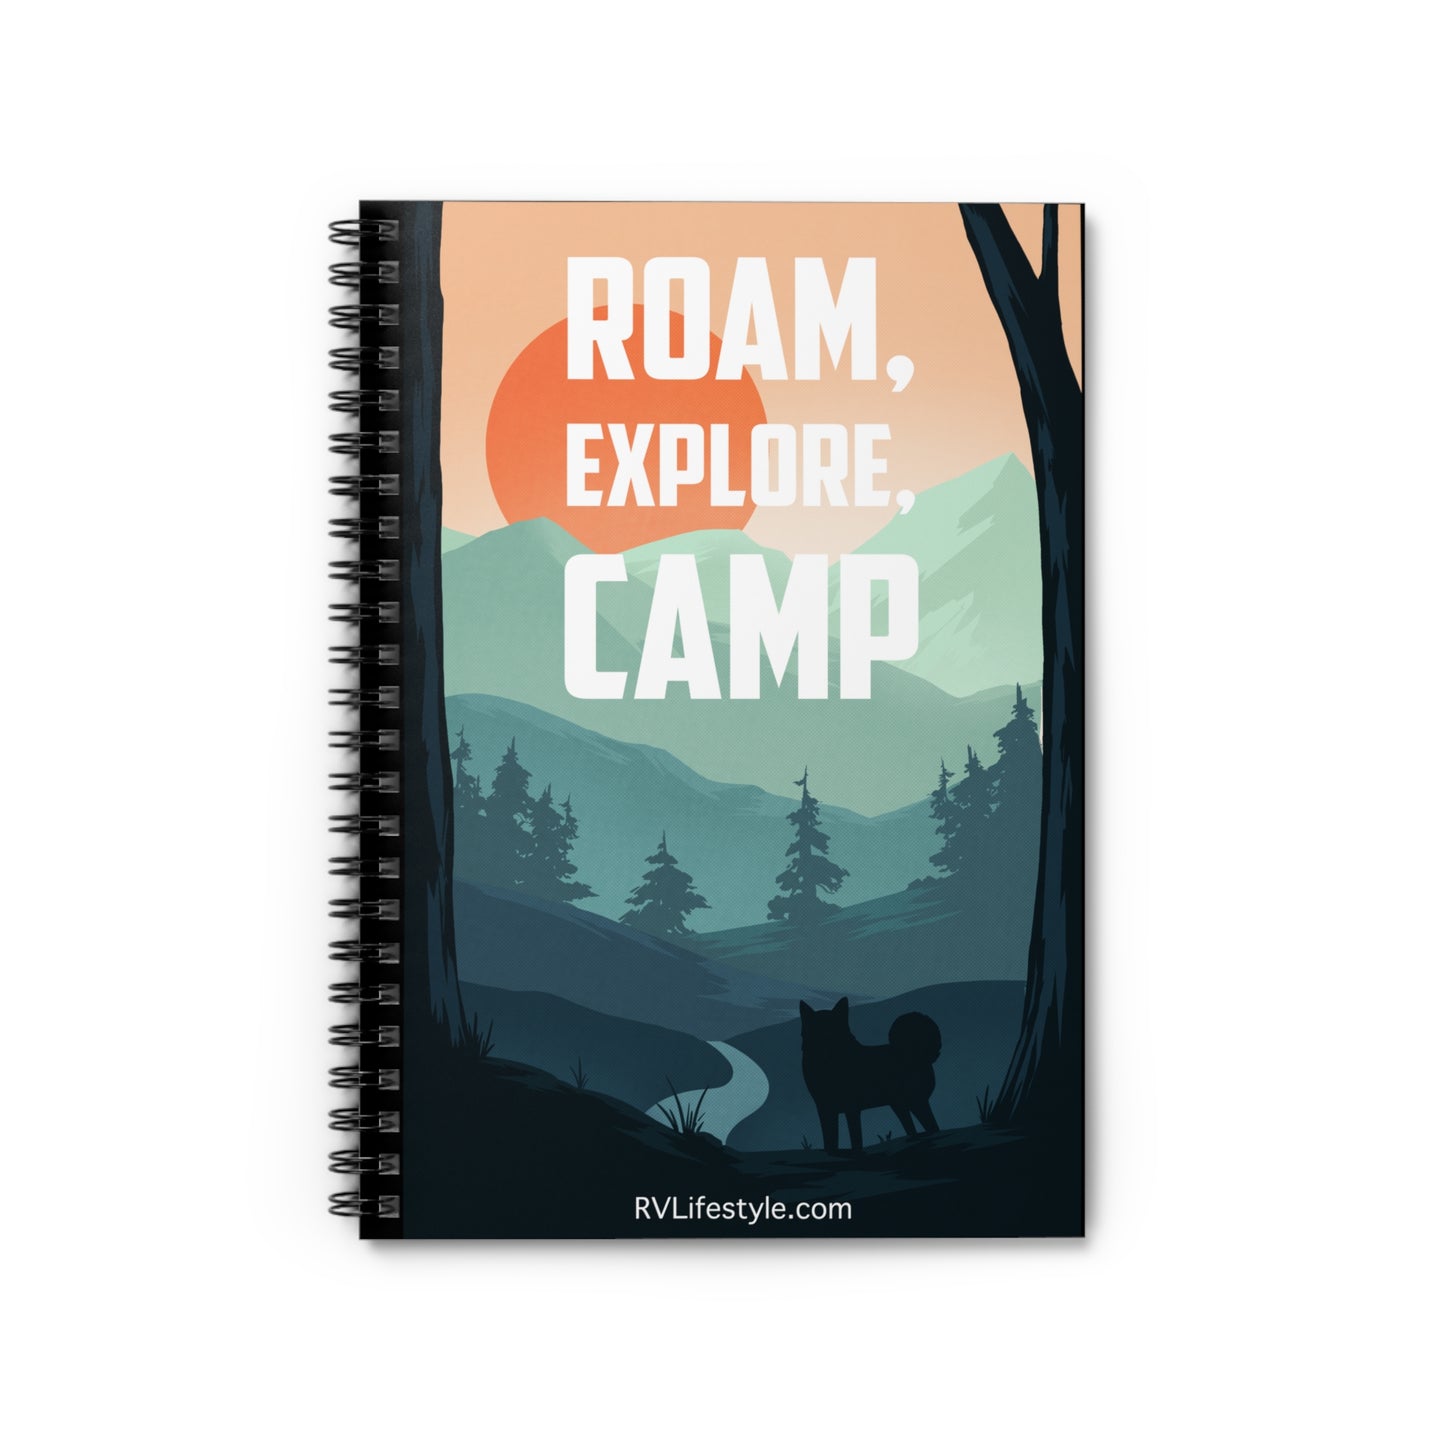 Roam Explore Camp - Spiral Notebook - Ruled Line